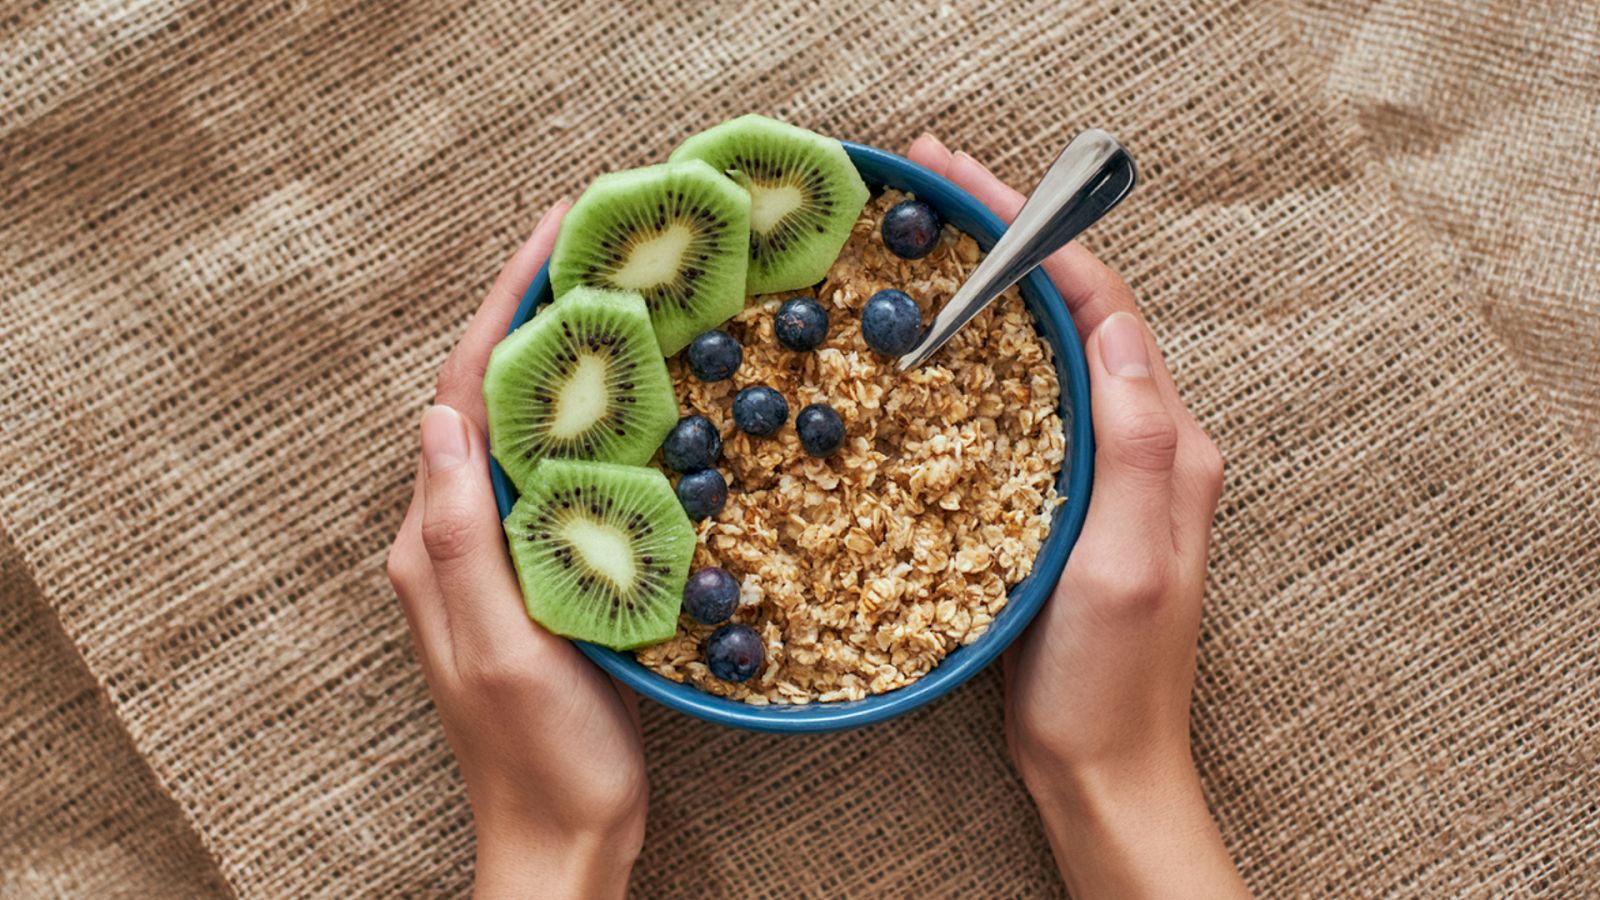 Son el kiwi y los cereales el mejor desayuno?